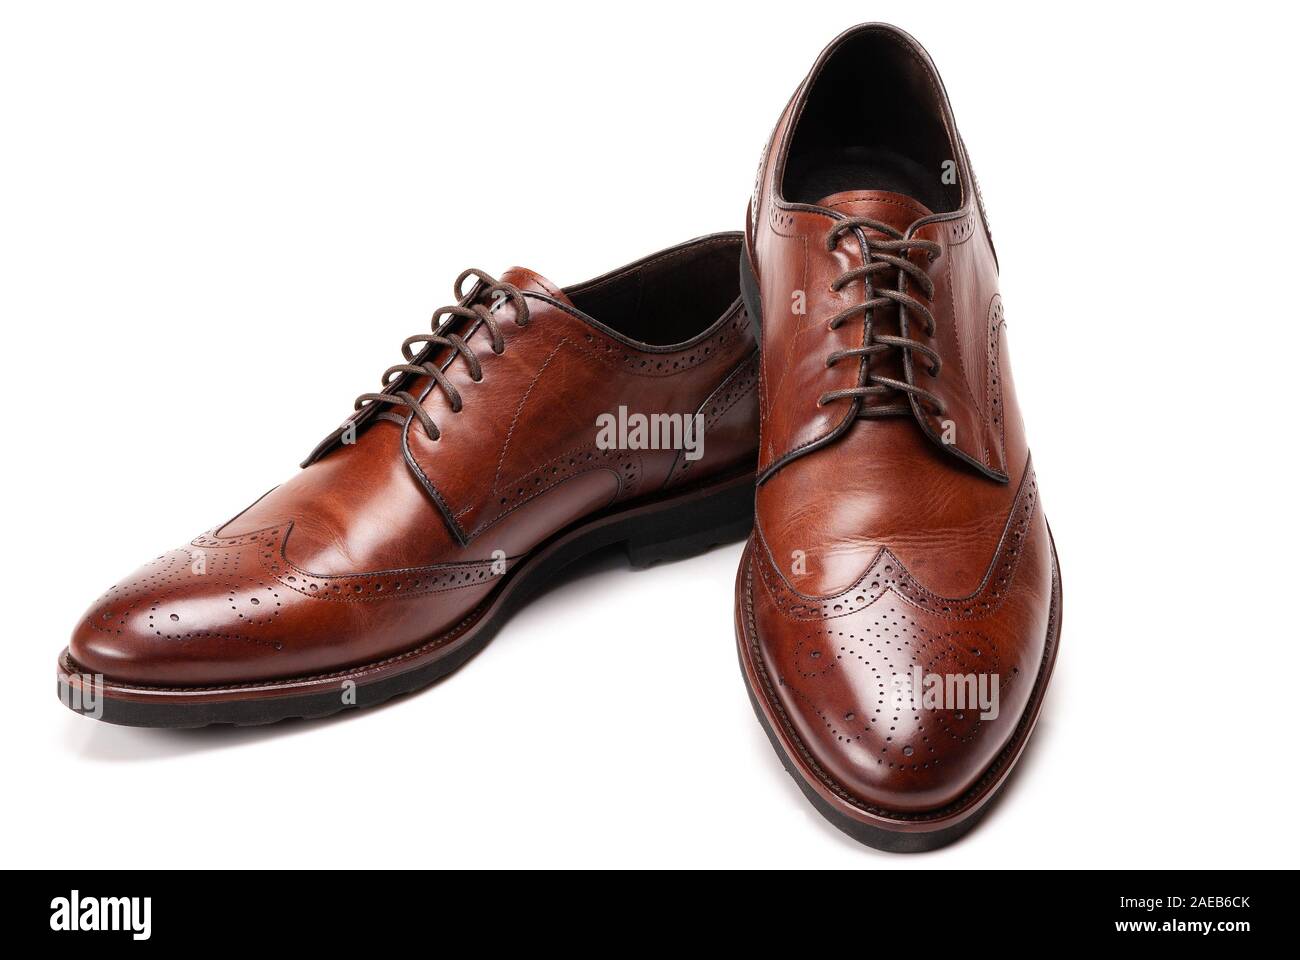 Herren elegante Schuhe aus Leder auf einem weißen Hintergrund  Stockfotografie - Alamy